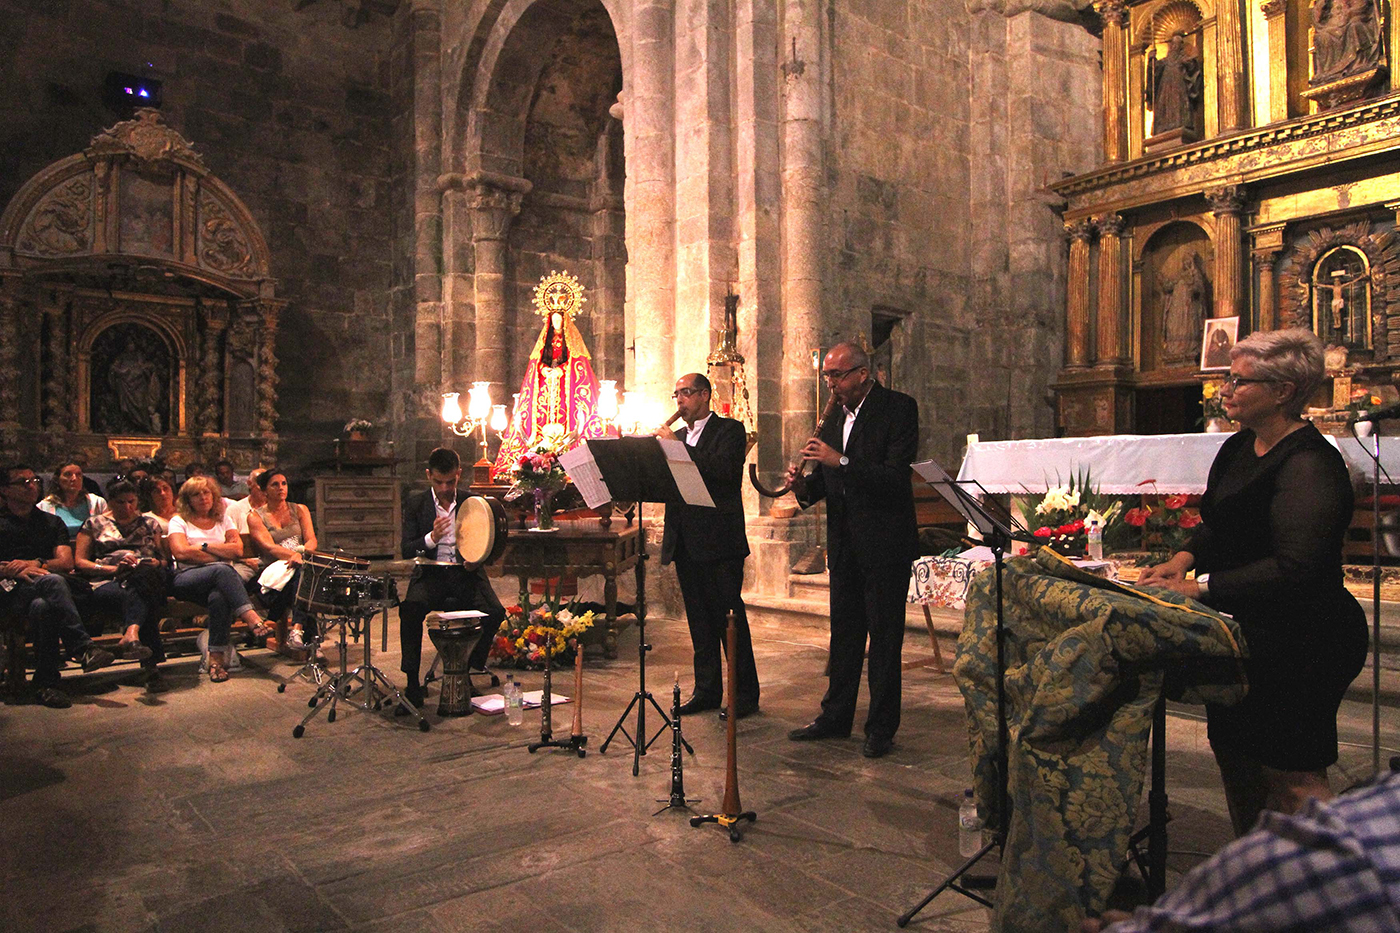 La música regresa a la iglesia de San Martín de Castañeda gracias al Plan Románico Atlántico